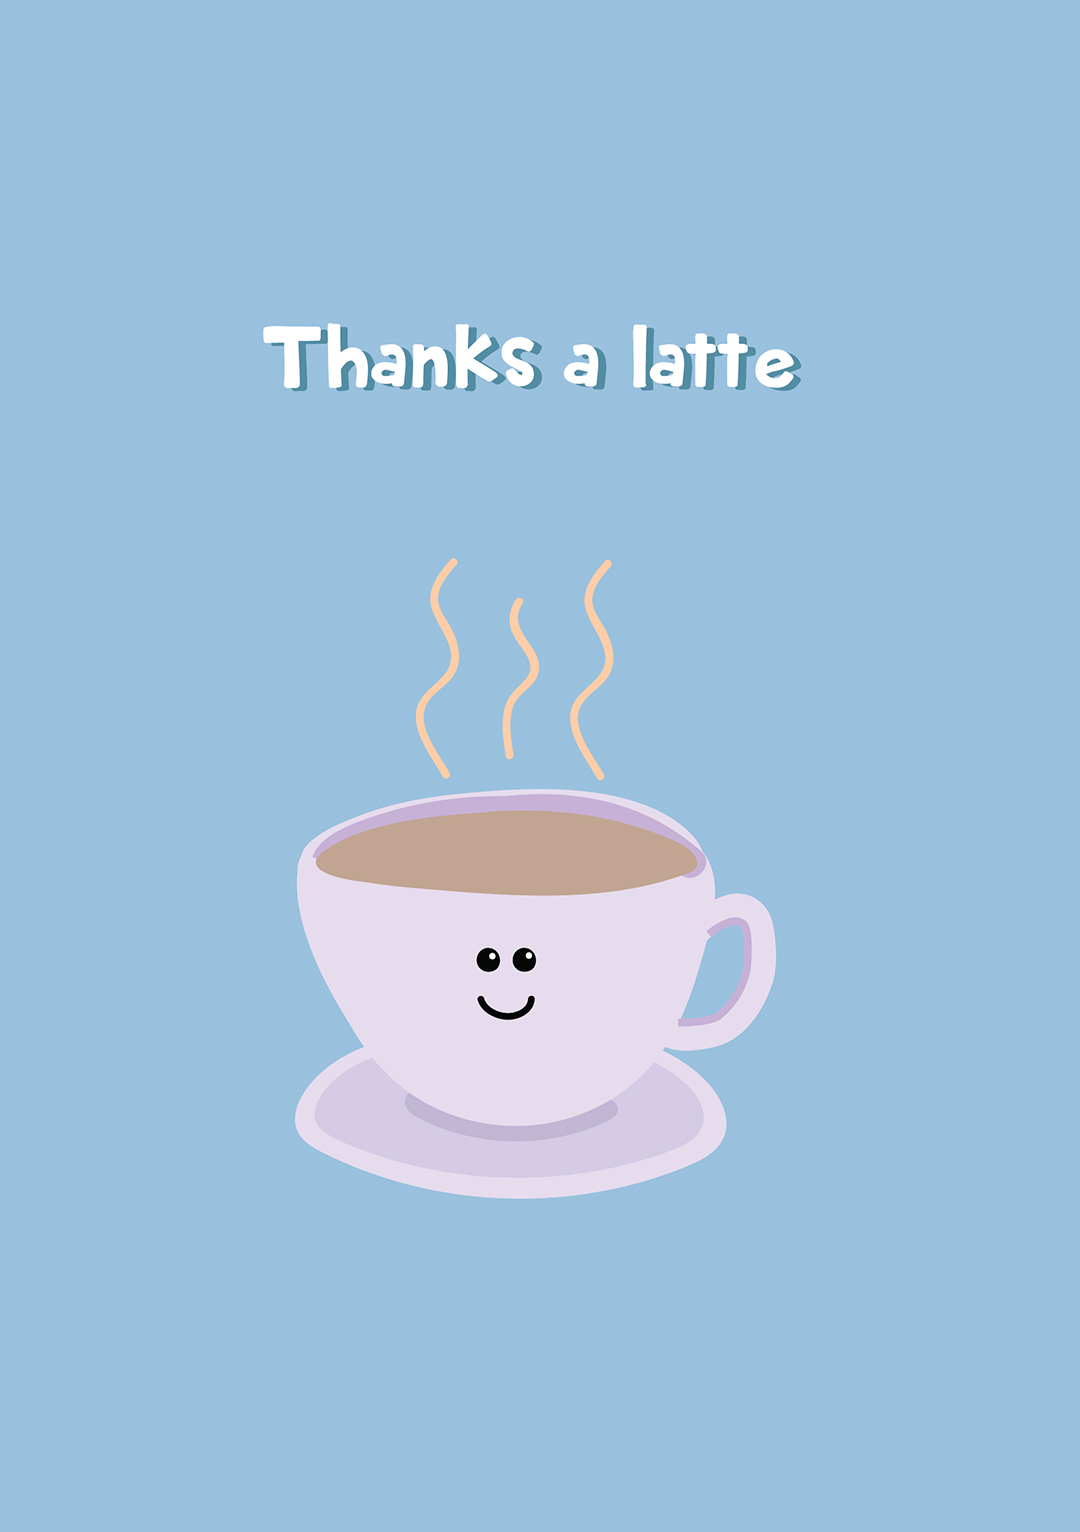 Thanks A Latte - Cute Thank You Card